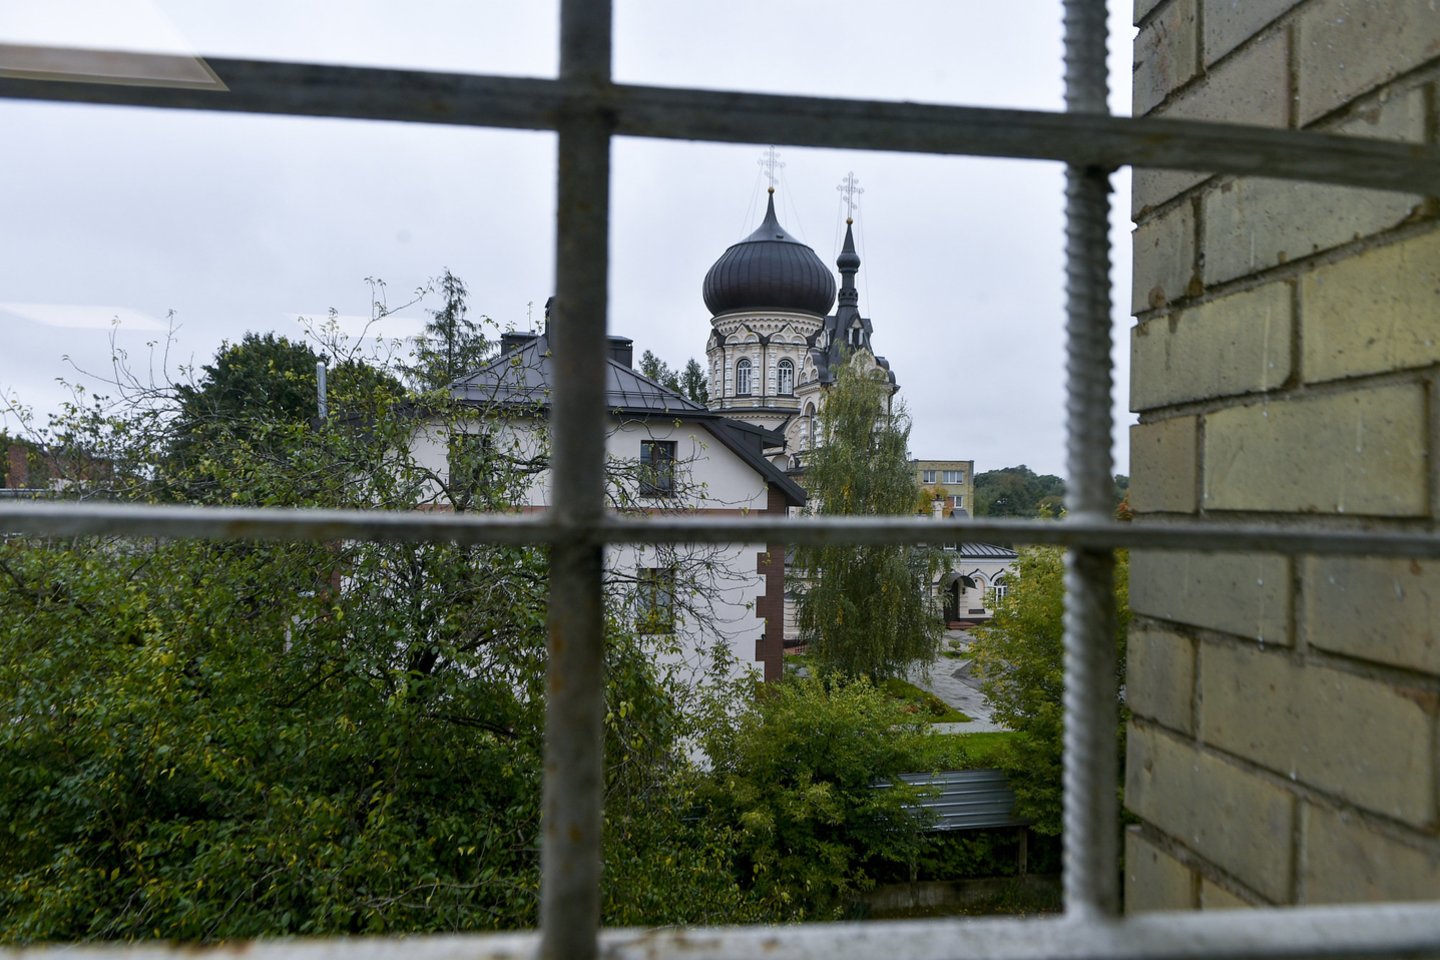  Nakvynės namai Vilniuje, kuriuose bus apgyvendinti migrantai.<br> V.Ščiavinsko nuotr.